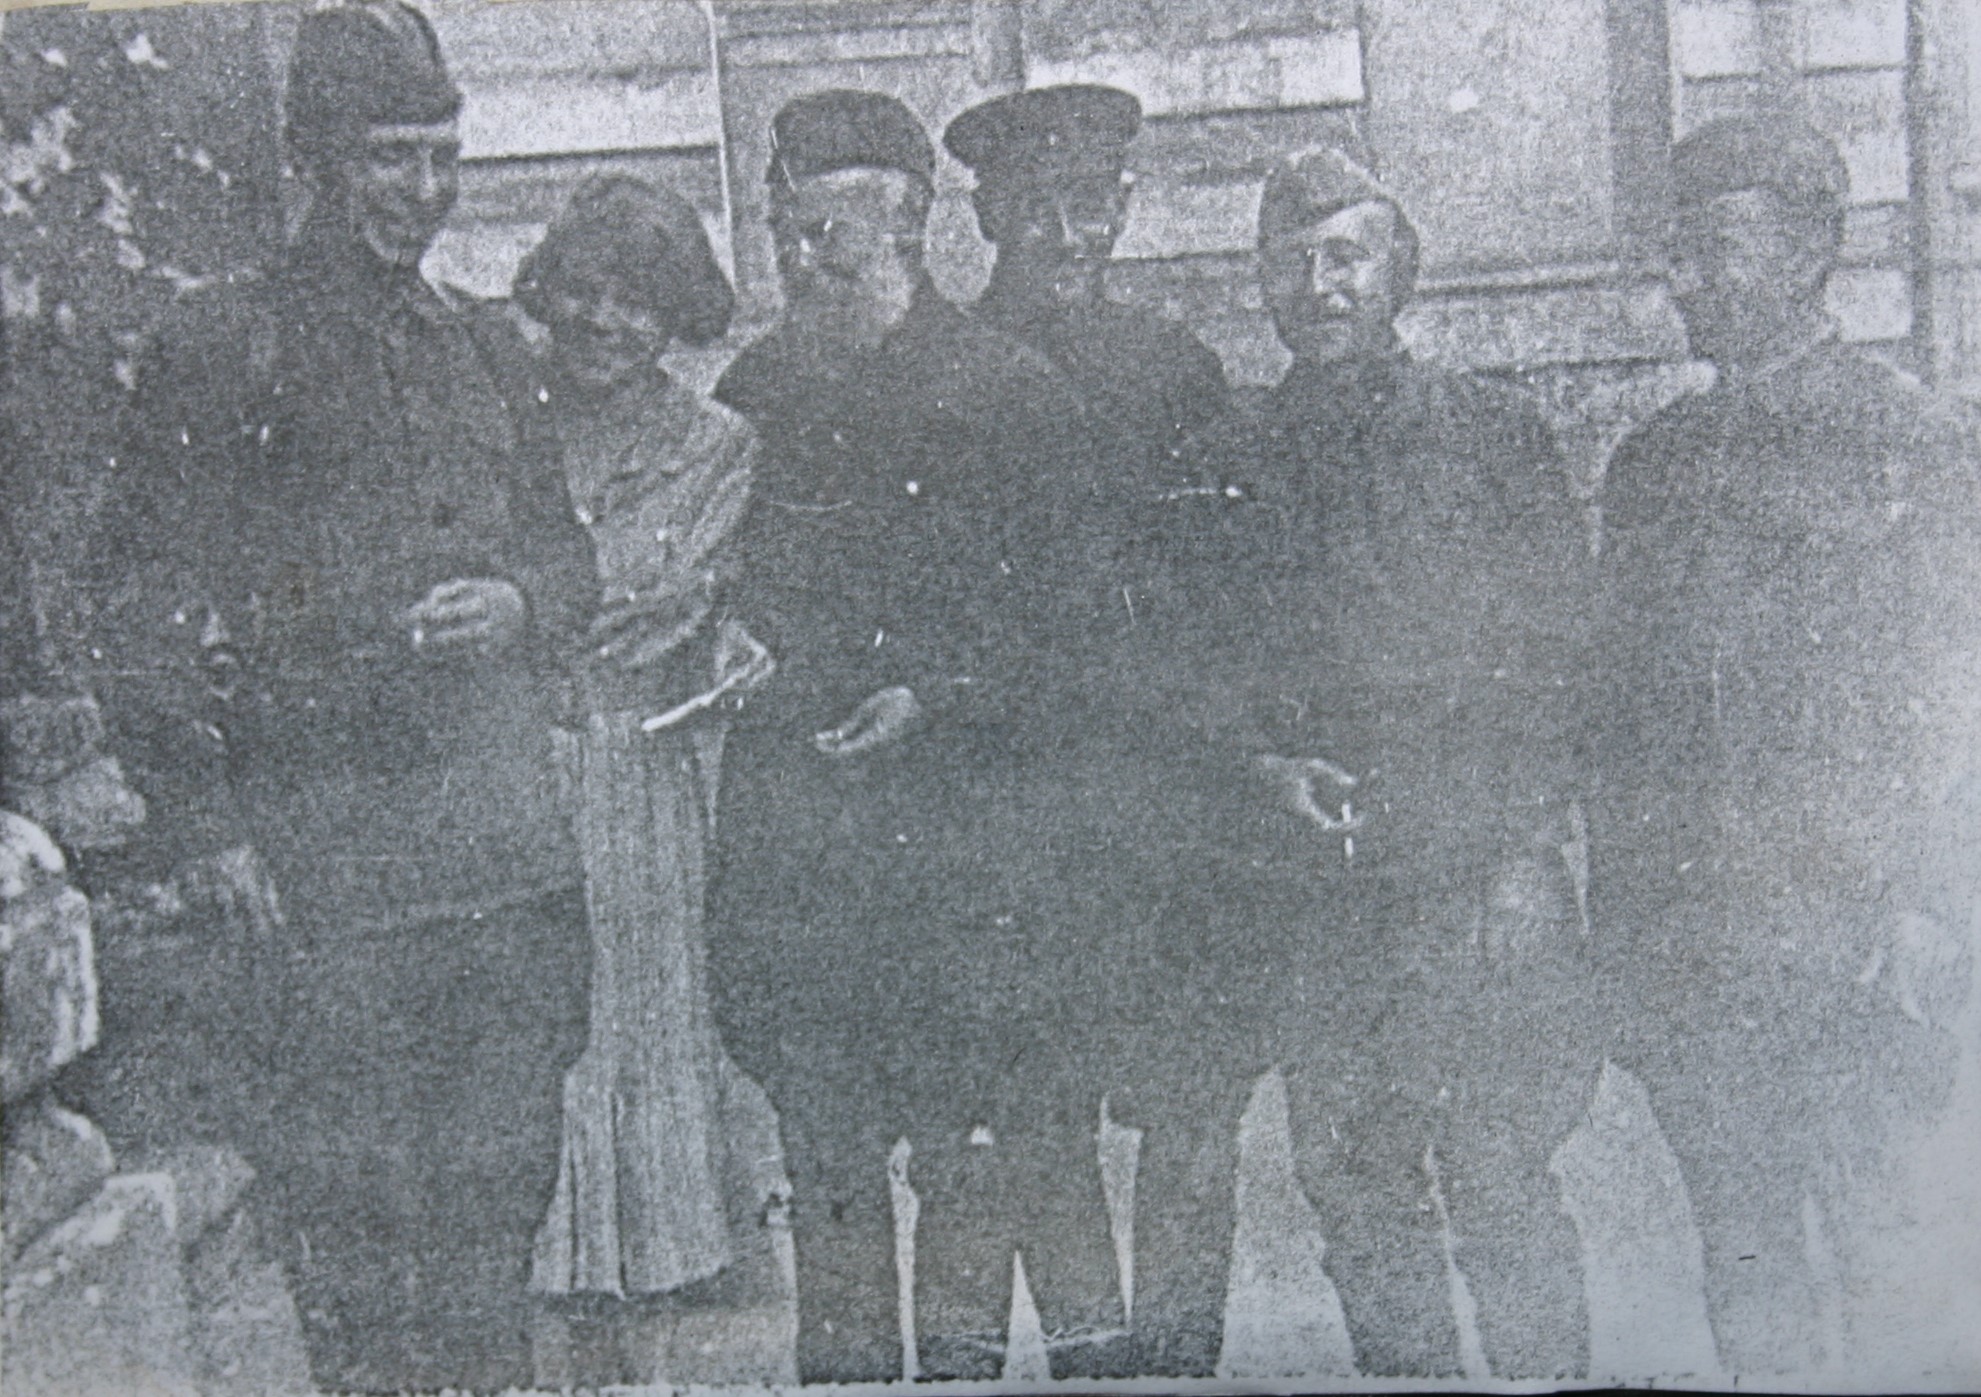 Н.З. Коляда с товарищами, прибывшими с ним на Смоленщину в июле 1941 года.